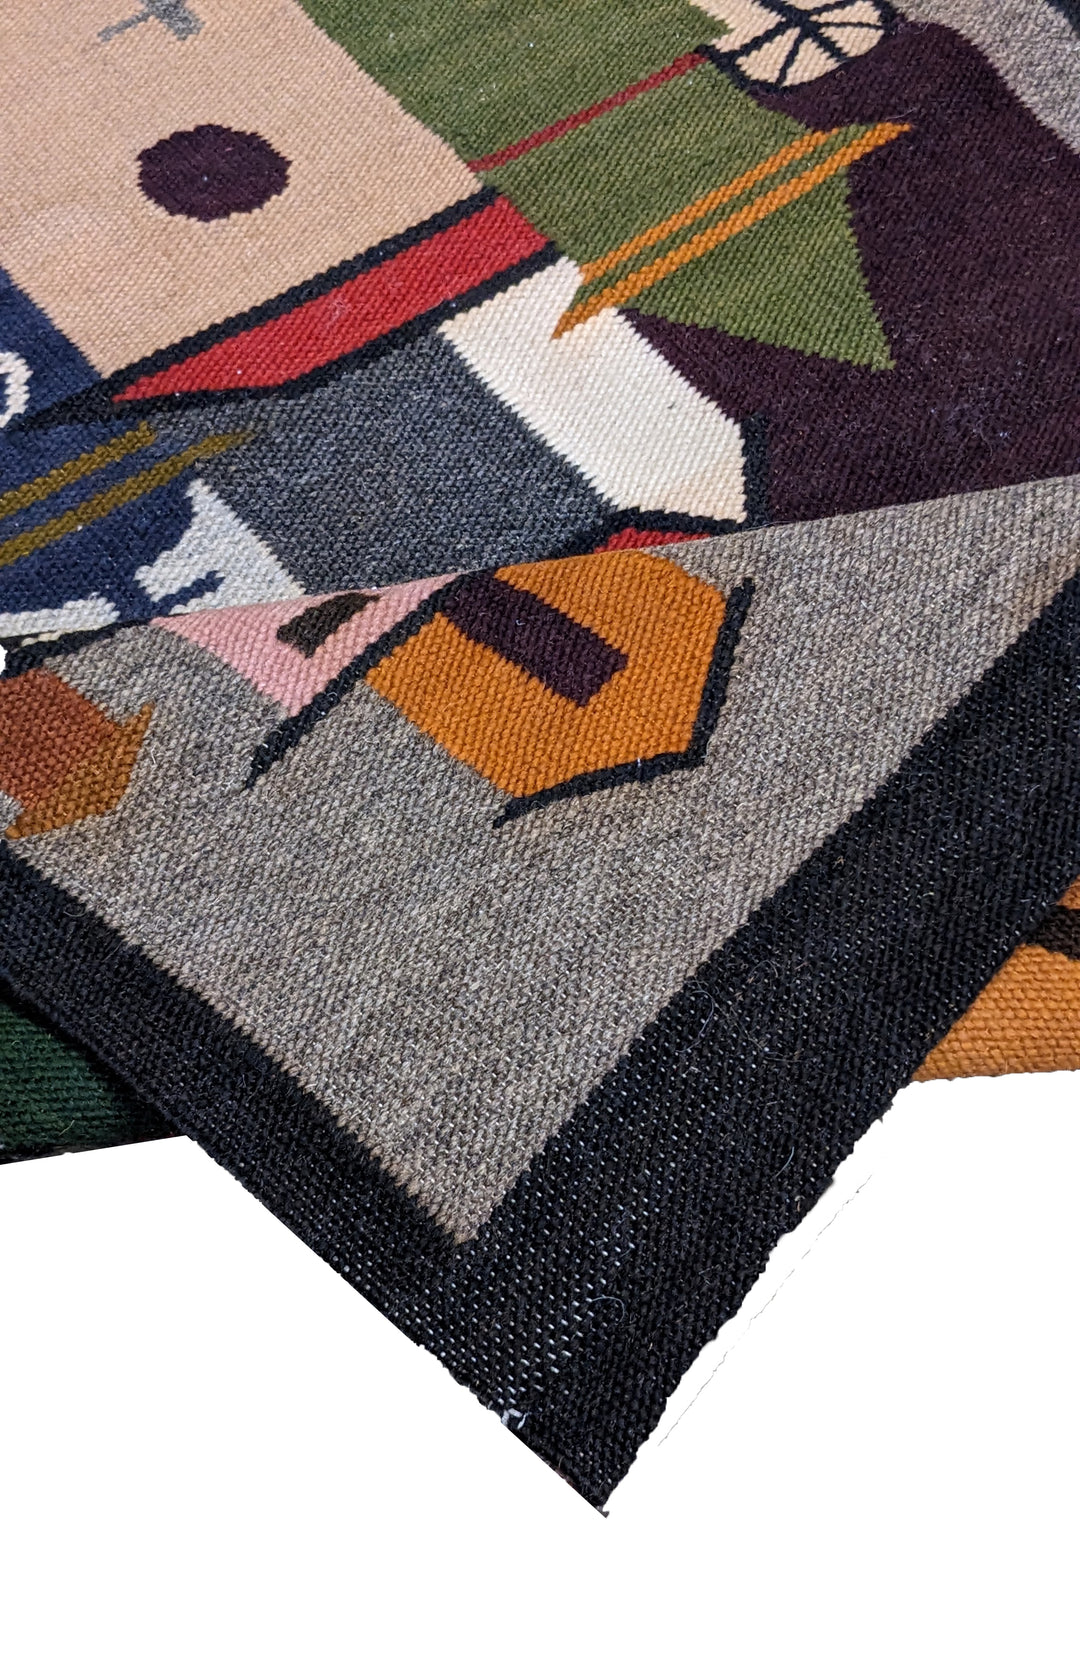 Havenal - Size: 3.5 x 1.9 - Imam Carpet Co